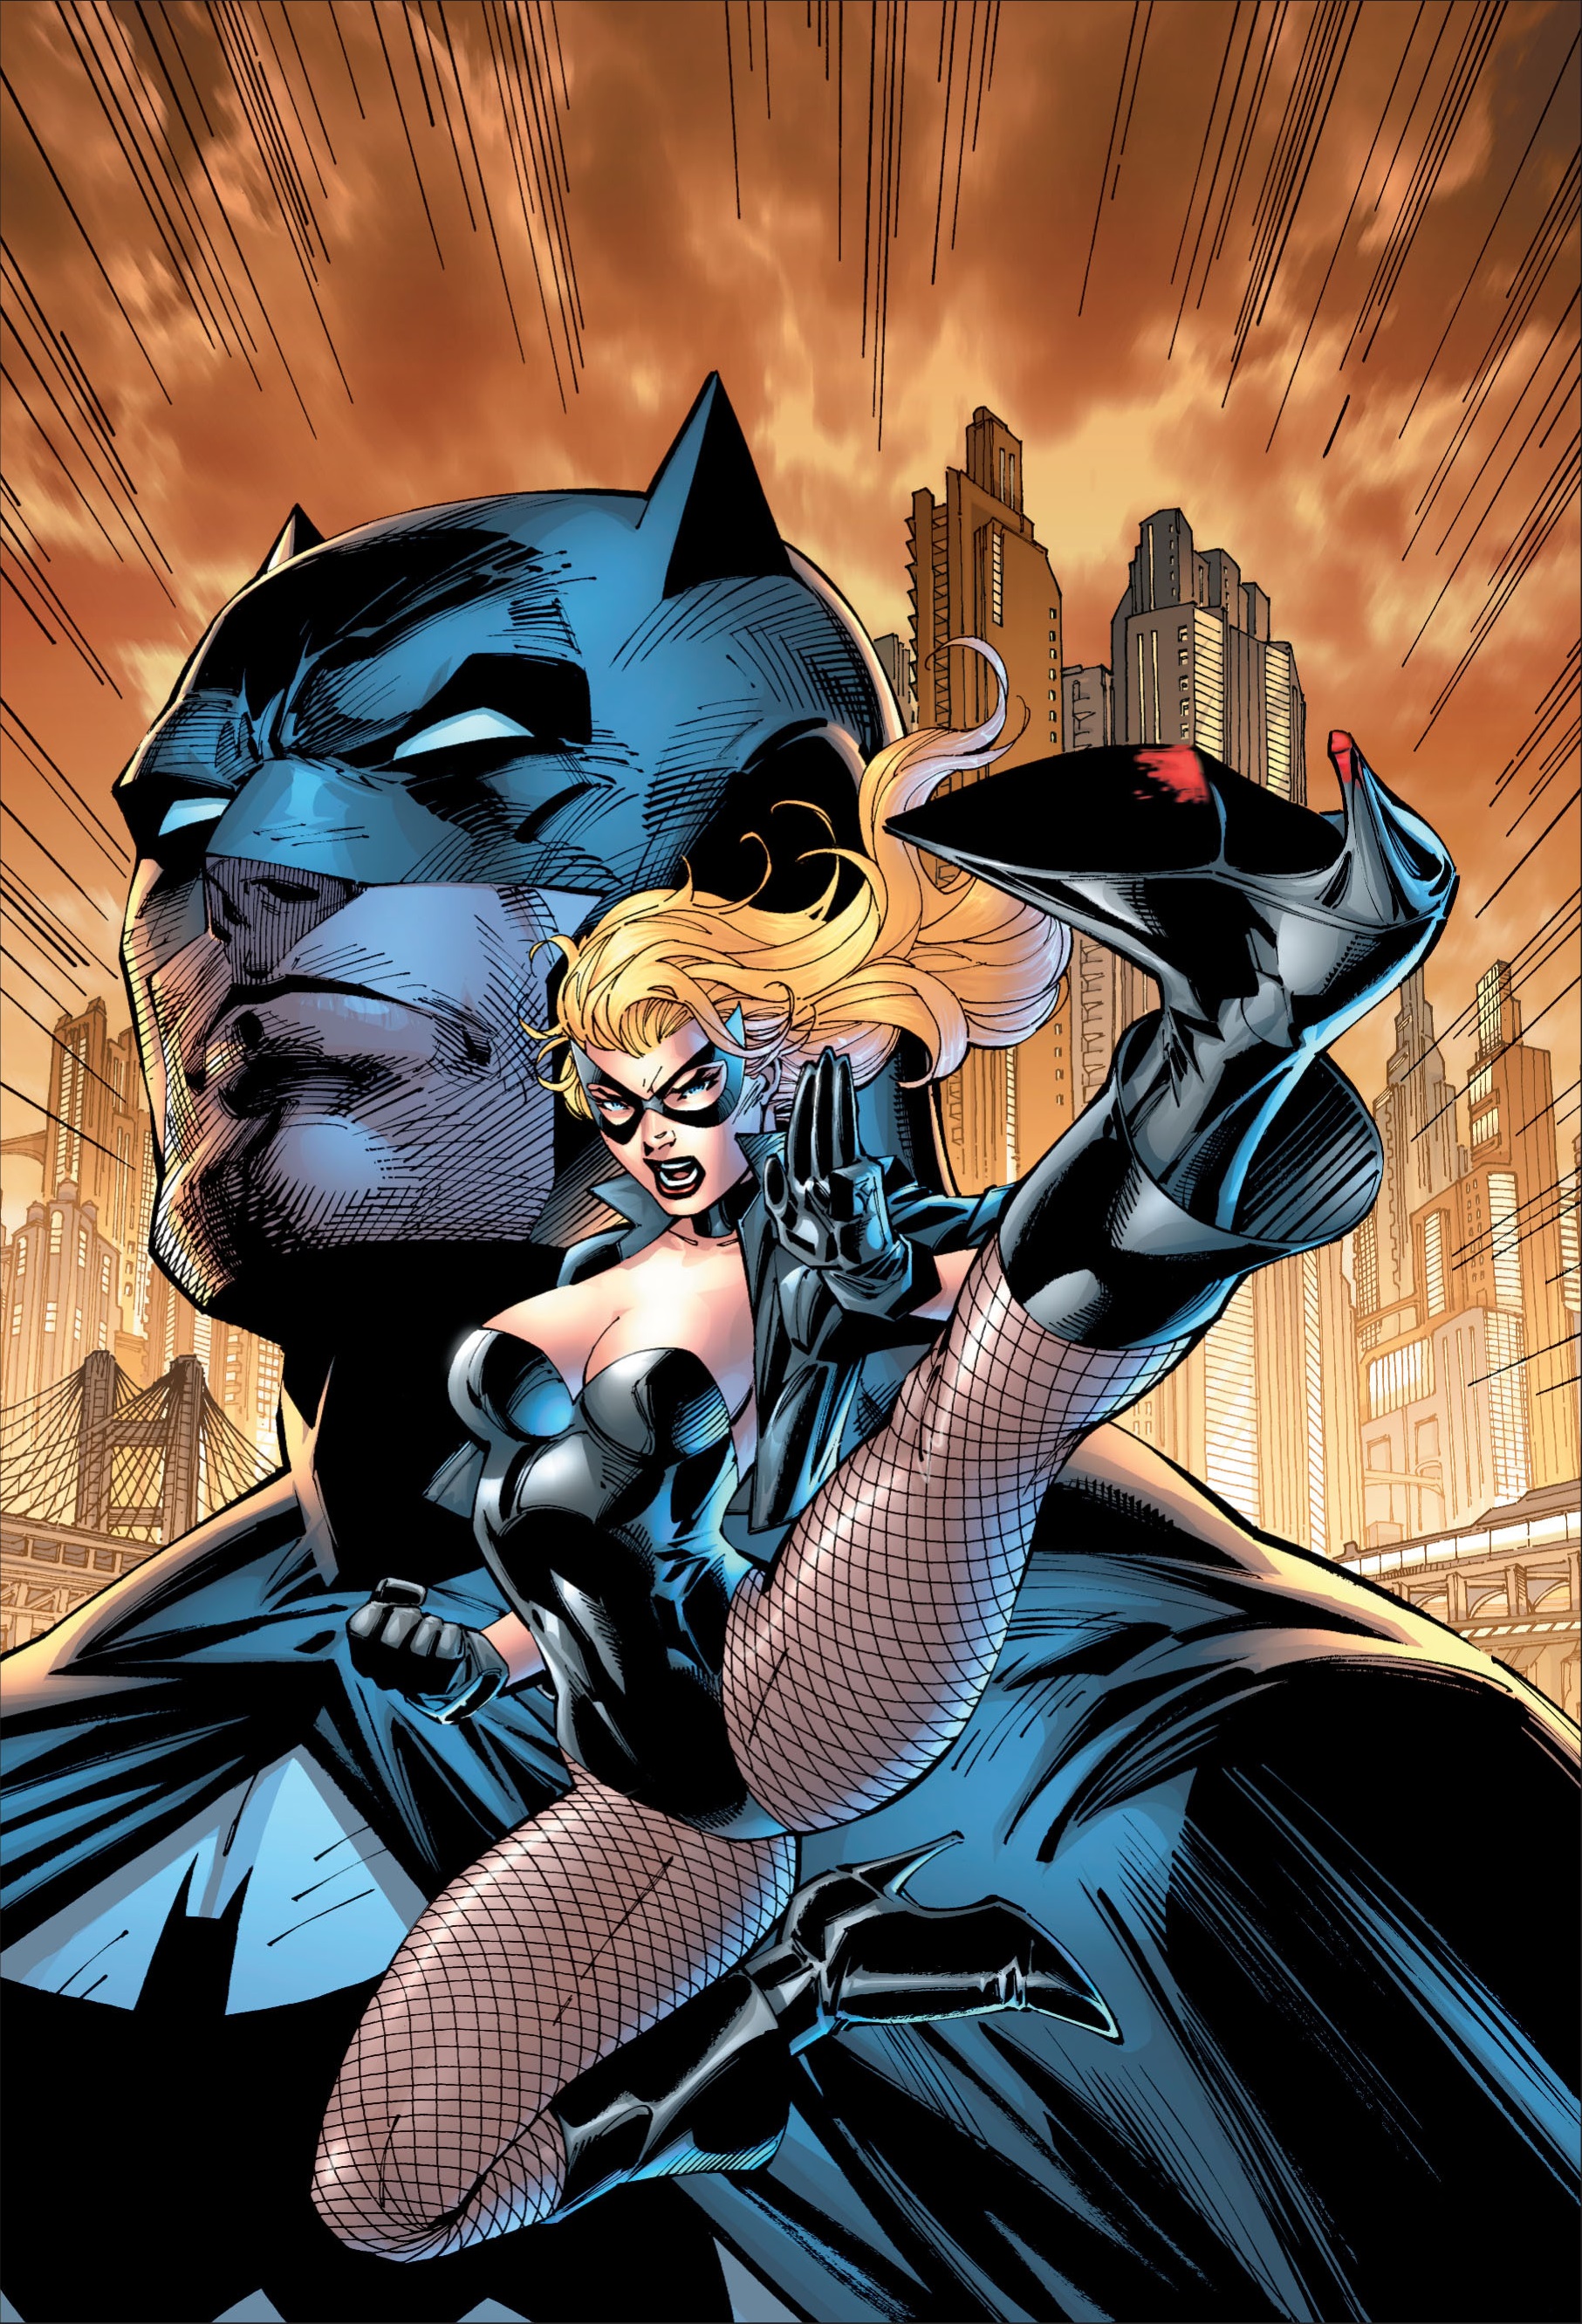 All Star Batman and Robin, the Boy Wonder Vol 1 3 | DC Database | Fandom